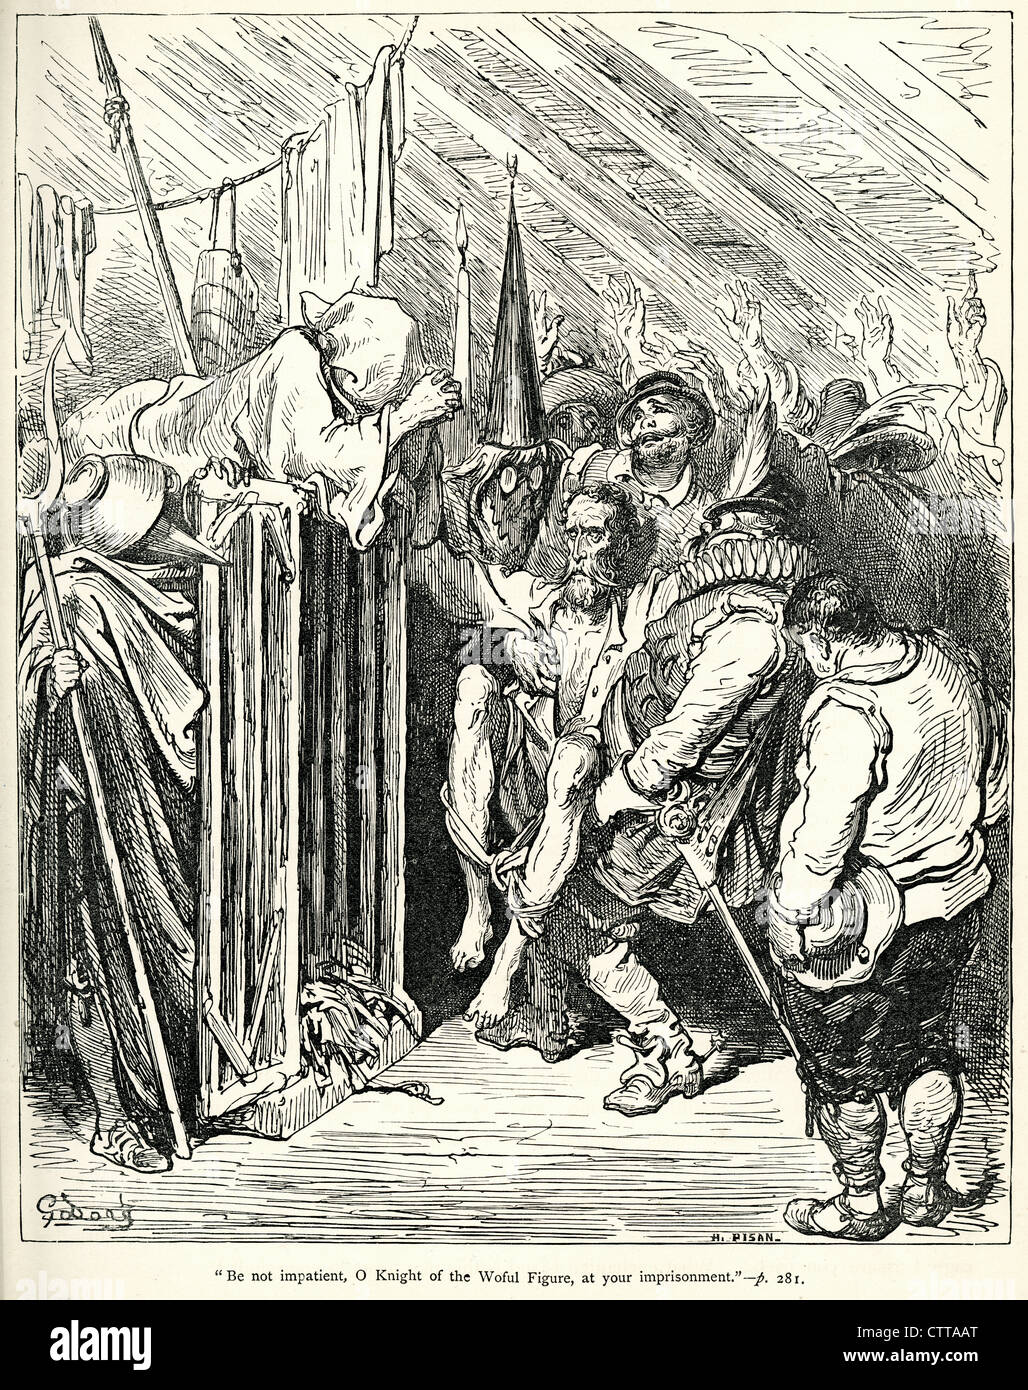 No ser impaciente o caballero de la lamentable cifra de su encarcelamiento. Ilustración de Gustave Doré de Don Quijote. Foto de stock